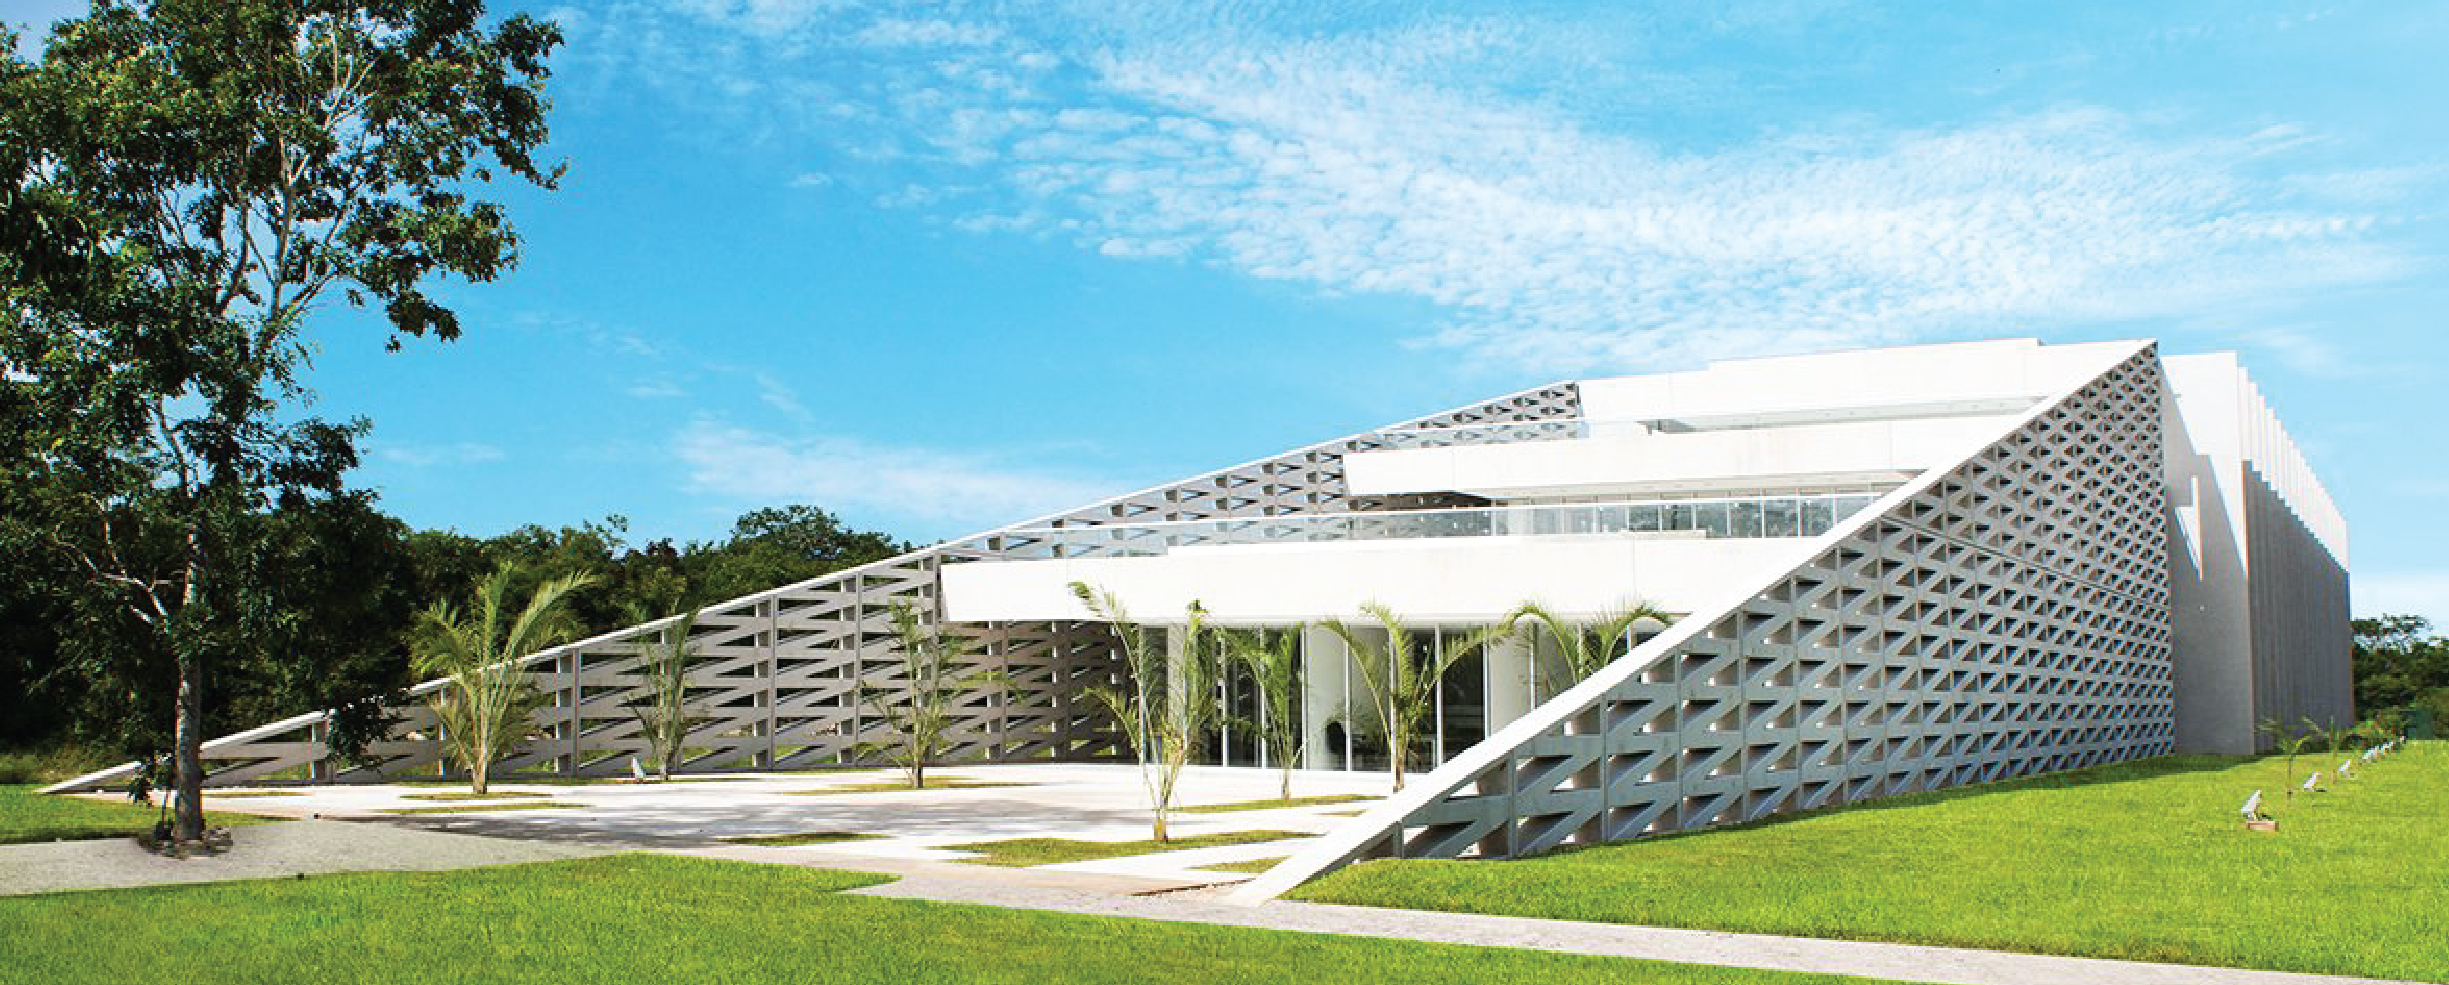 Anáhuac Mayab campus Educación Continua en Mérida, Yucatán